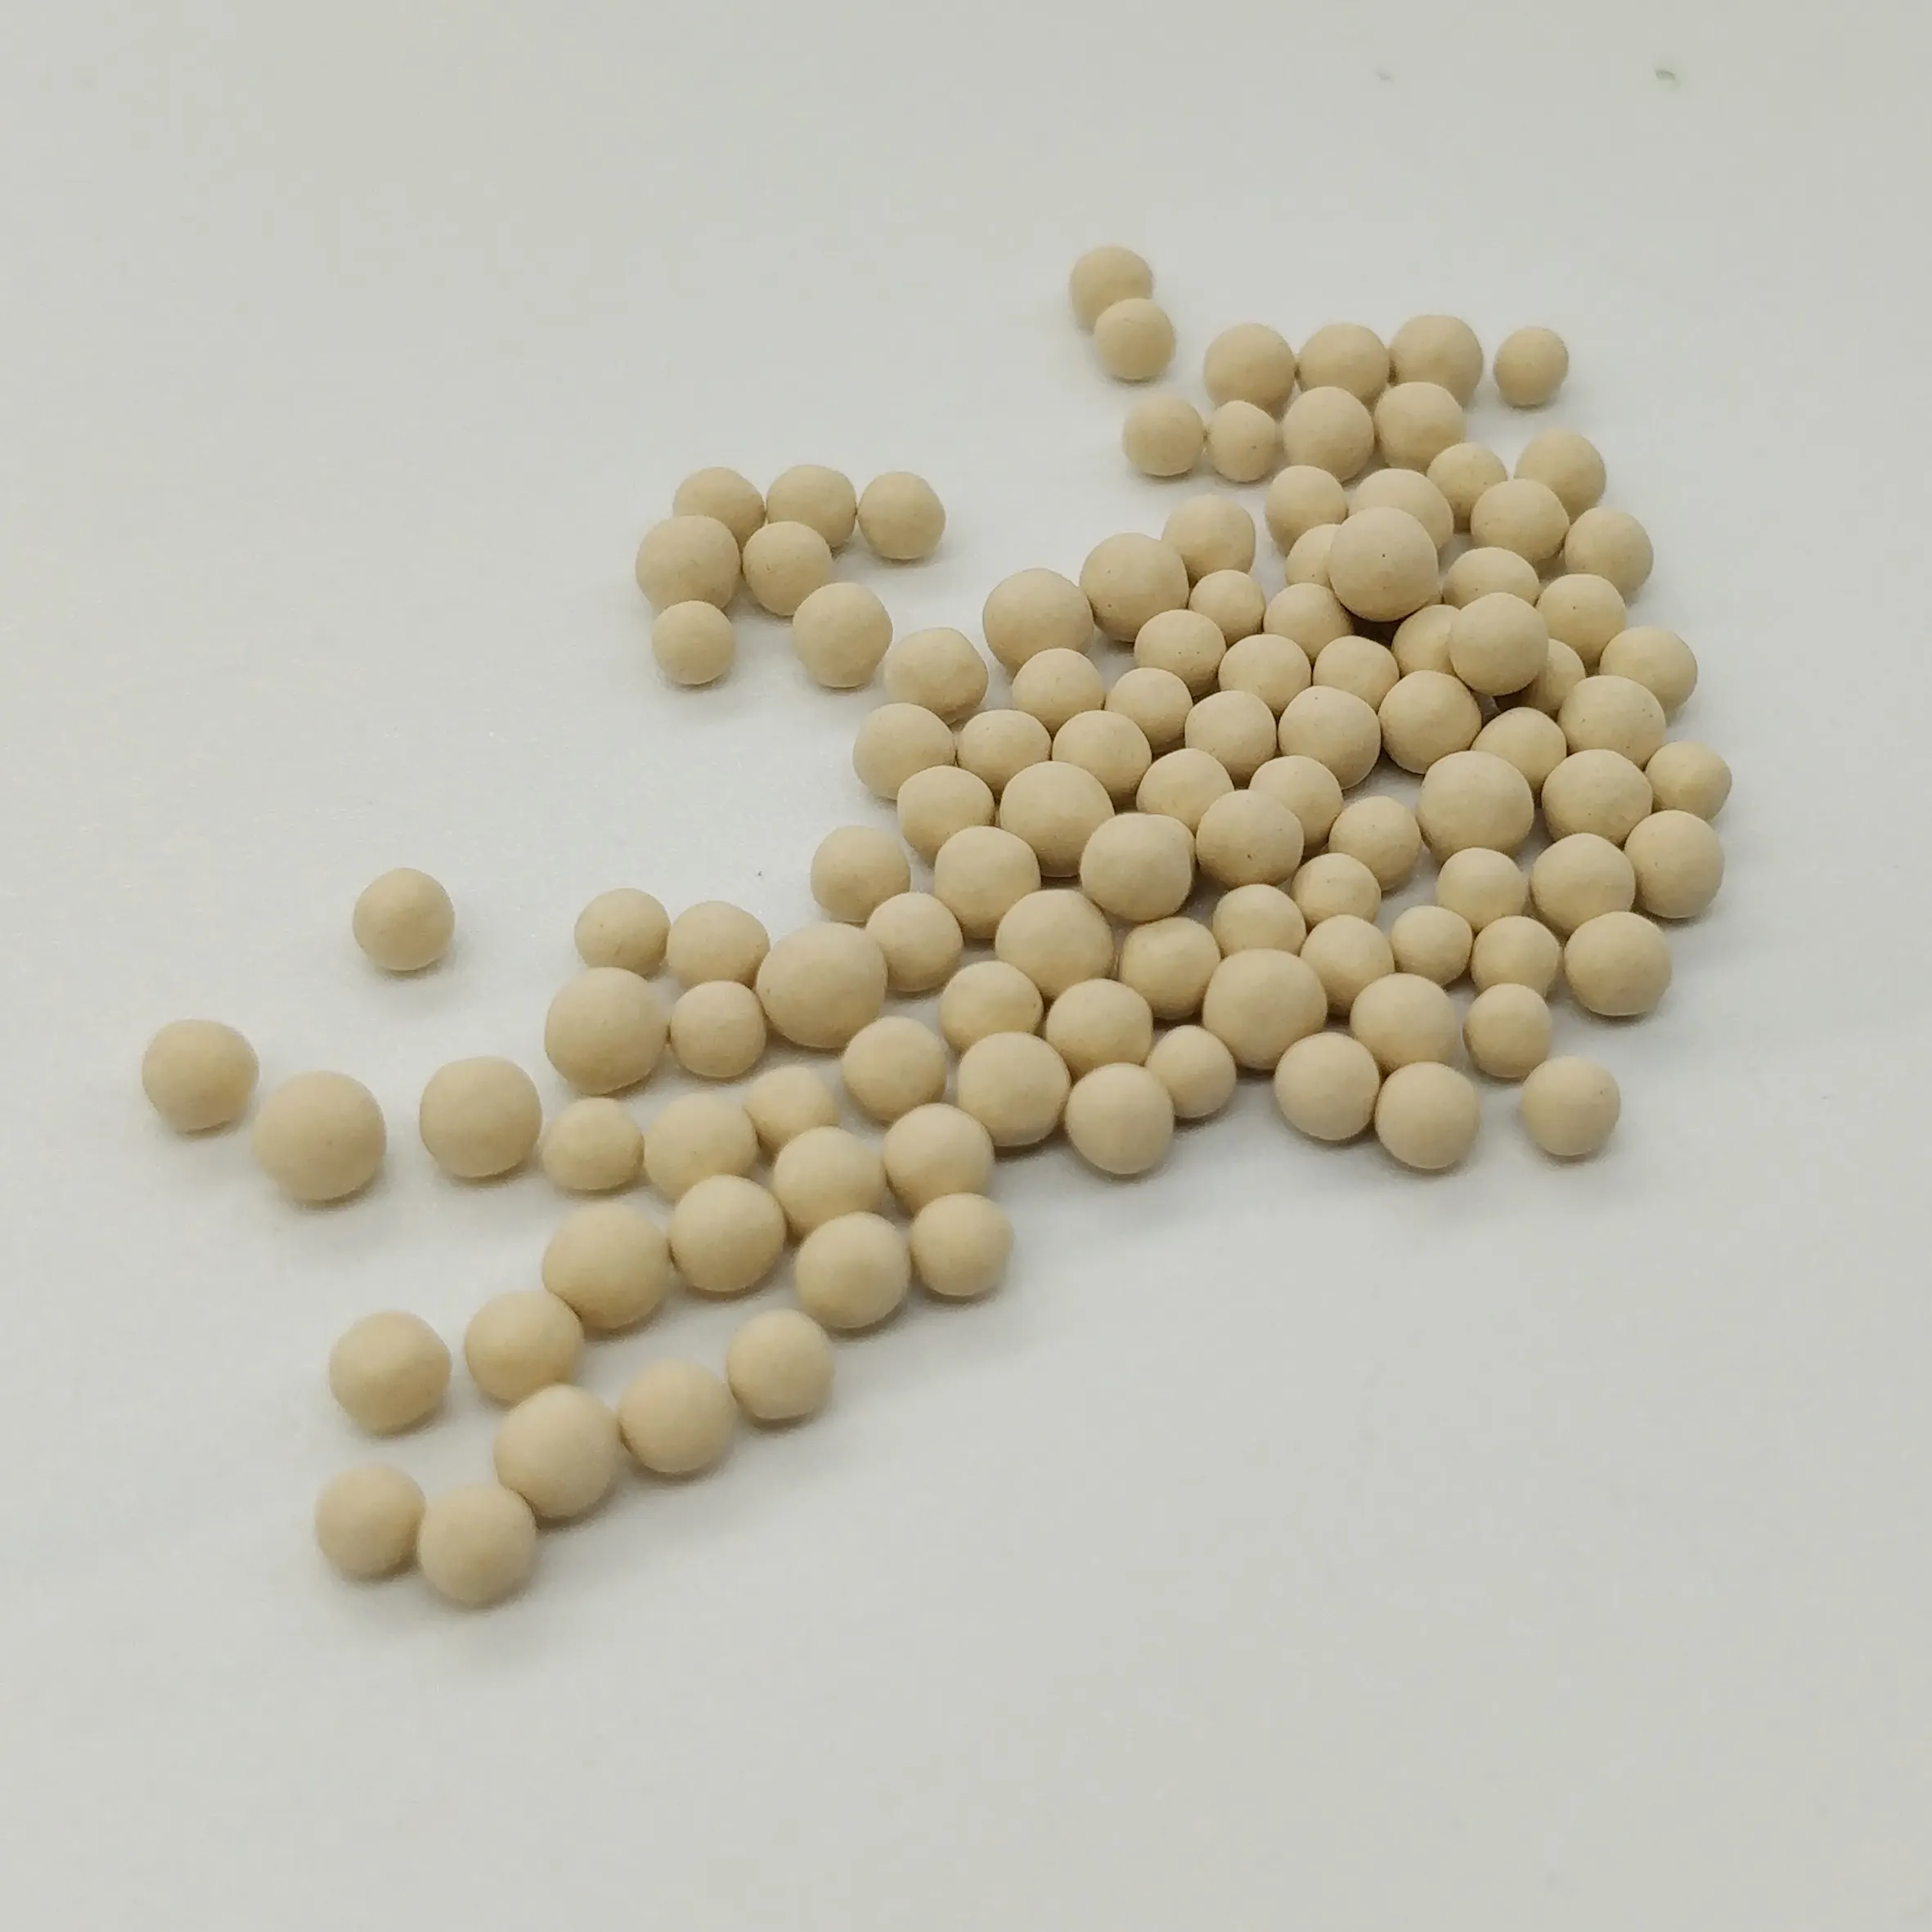 Zeolite 5 — lot de pastilles de zeolite 5a, accessoires pour la fabrication de l'oxygène, prix psa 5a, lot de 5